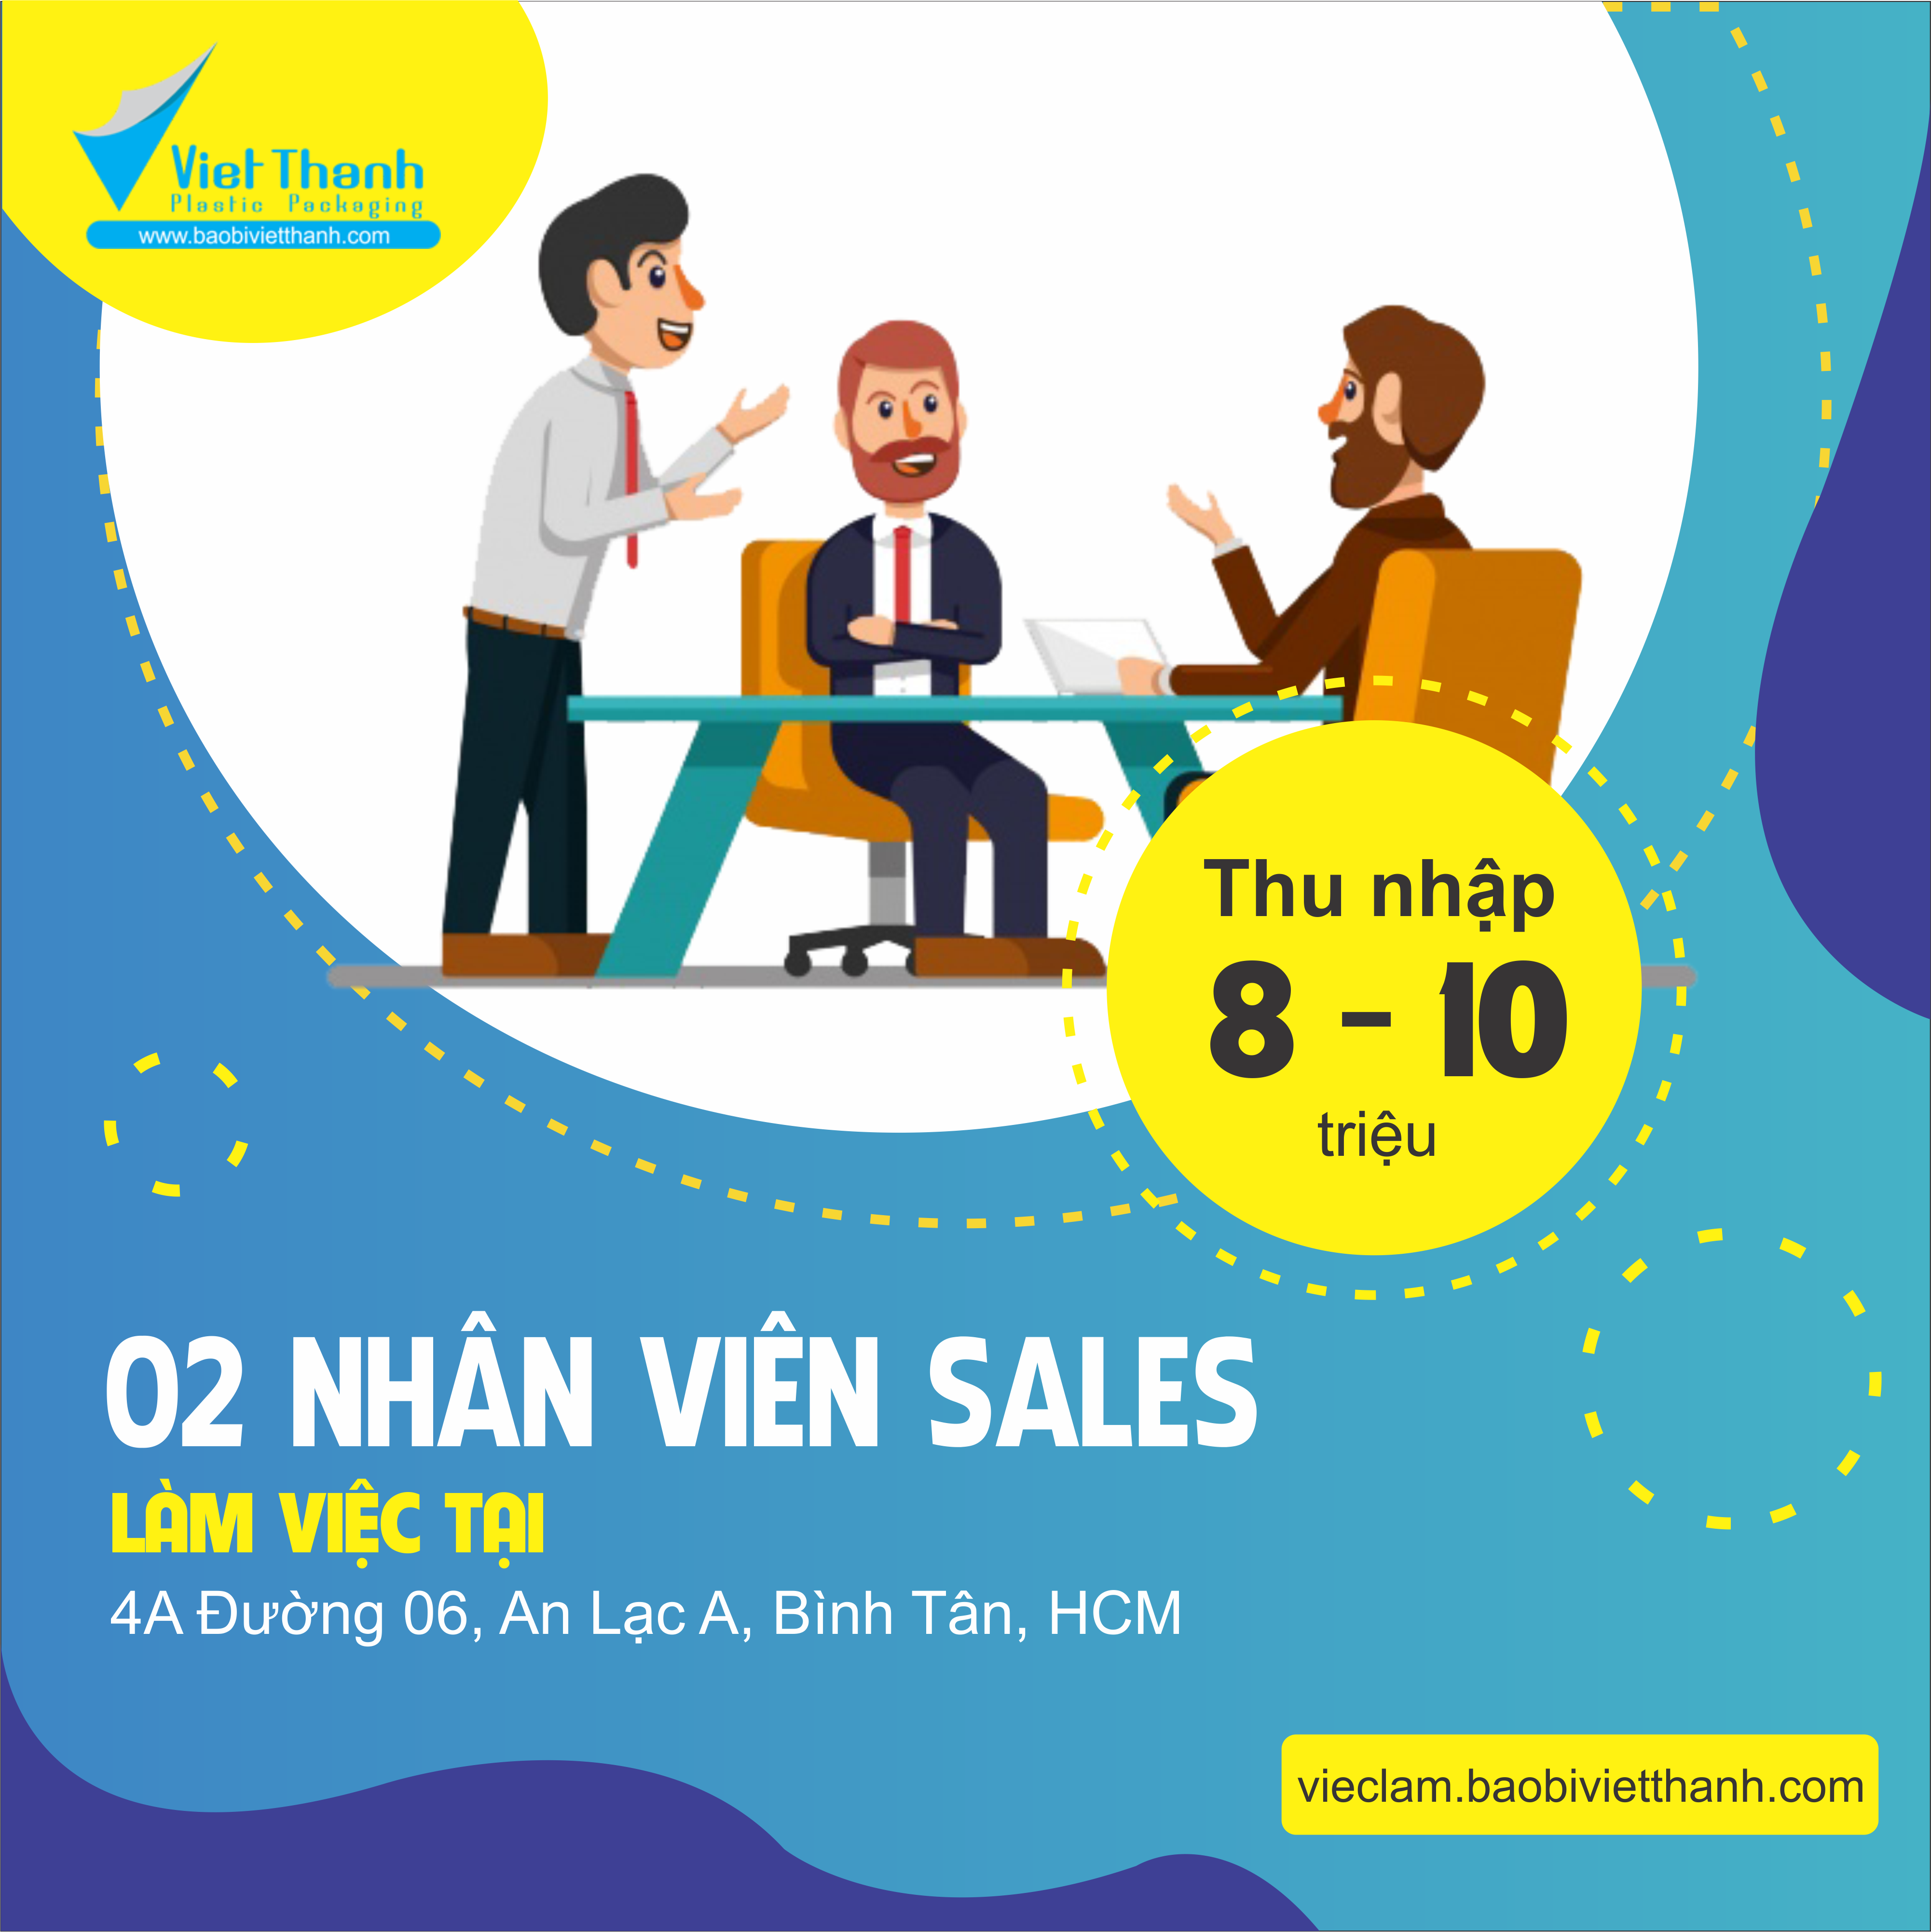 Vietthanh Tuyen Dung Nhan Vien Sales